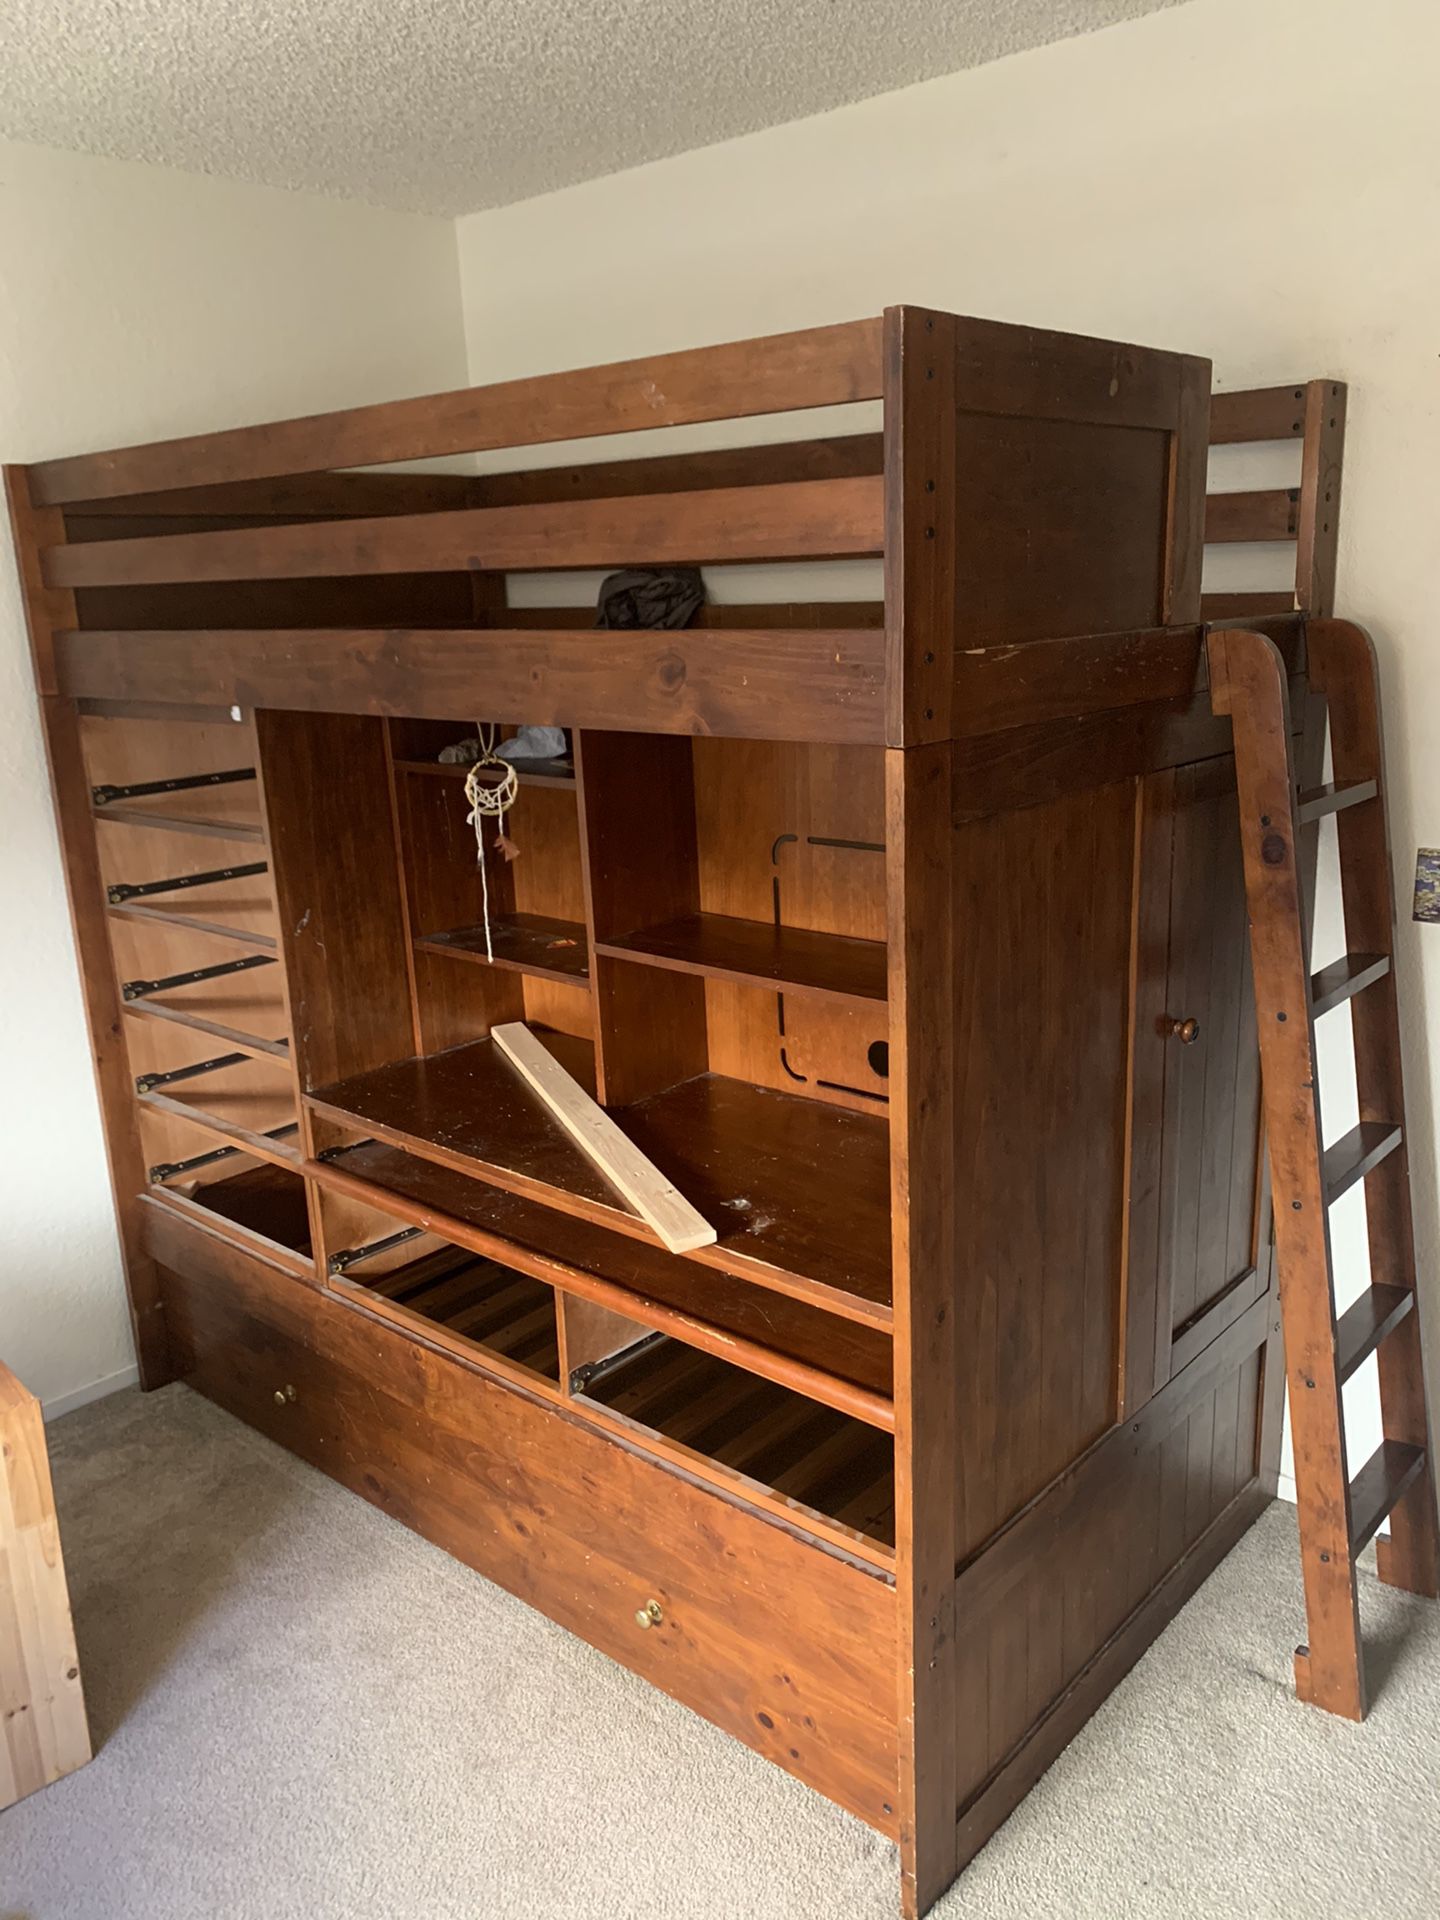 Trundle bunk bed with desk/dresser